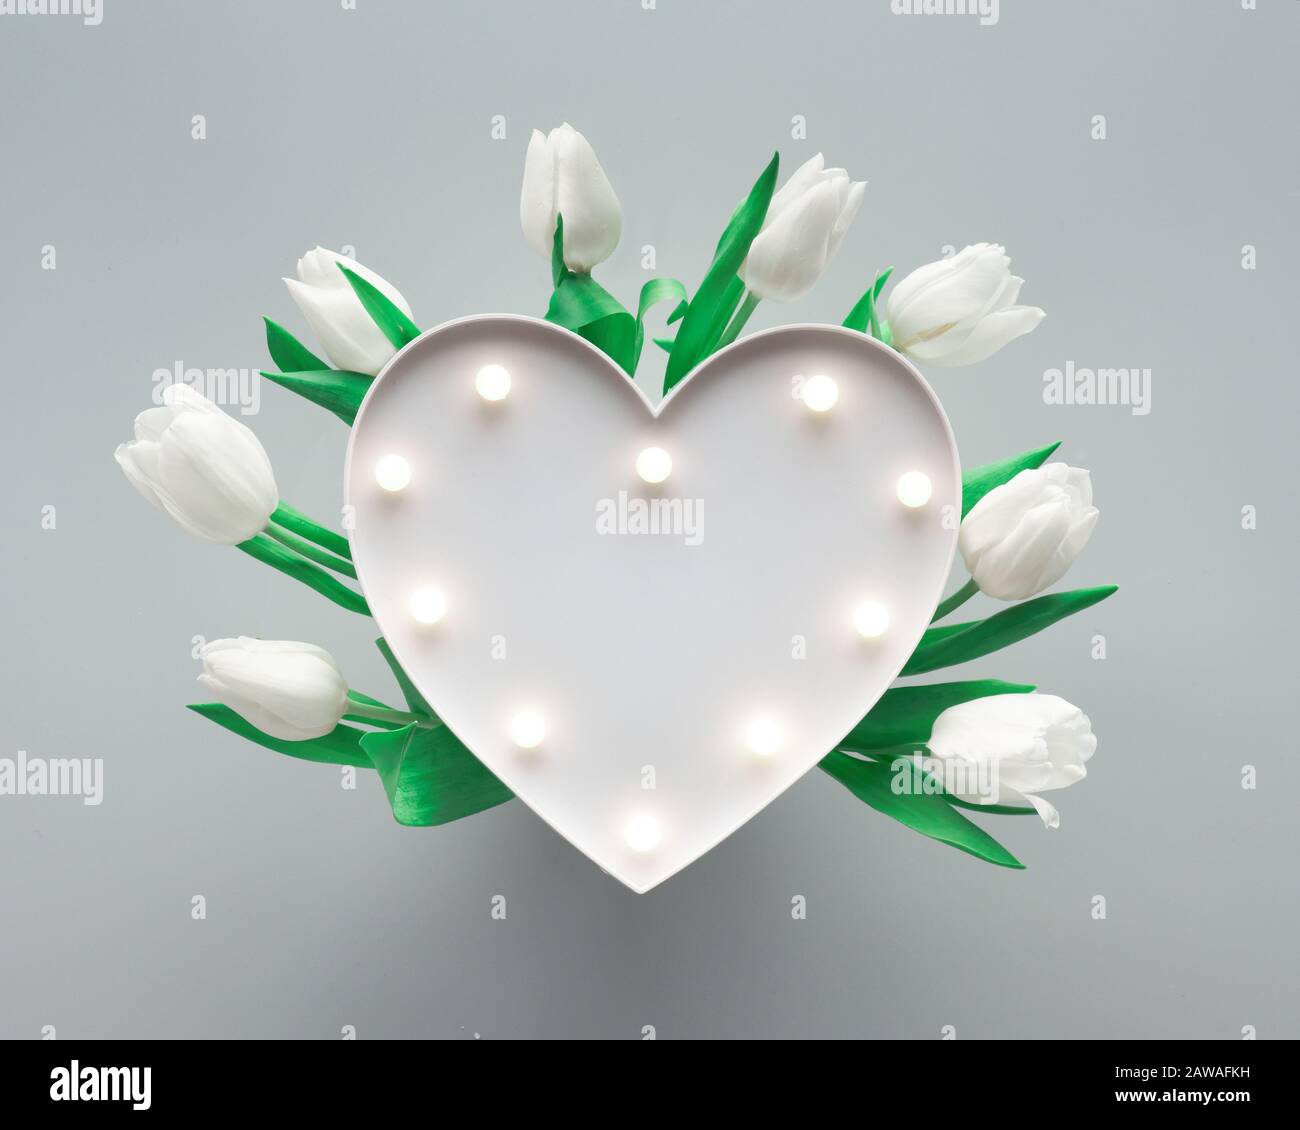 Sfondo a molla con lavagna luminosa a forma di cuore illuminata con luci.  Il cuore è circondato da tulipani bianchi su carta grigio argento. Piatto l  Foto stock - Alamy